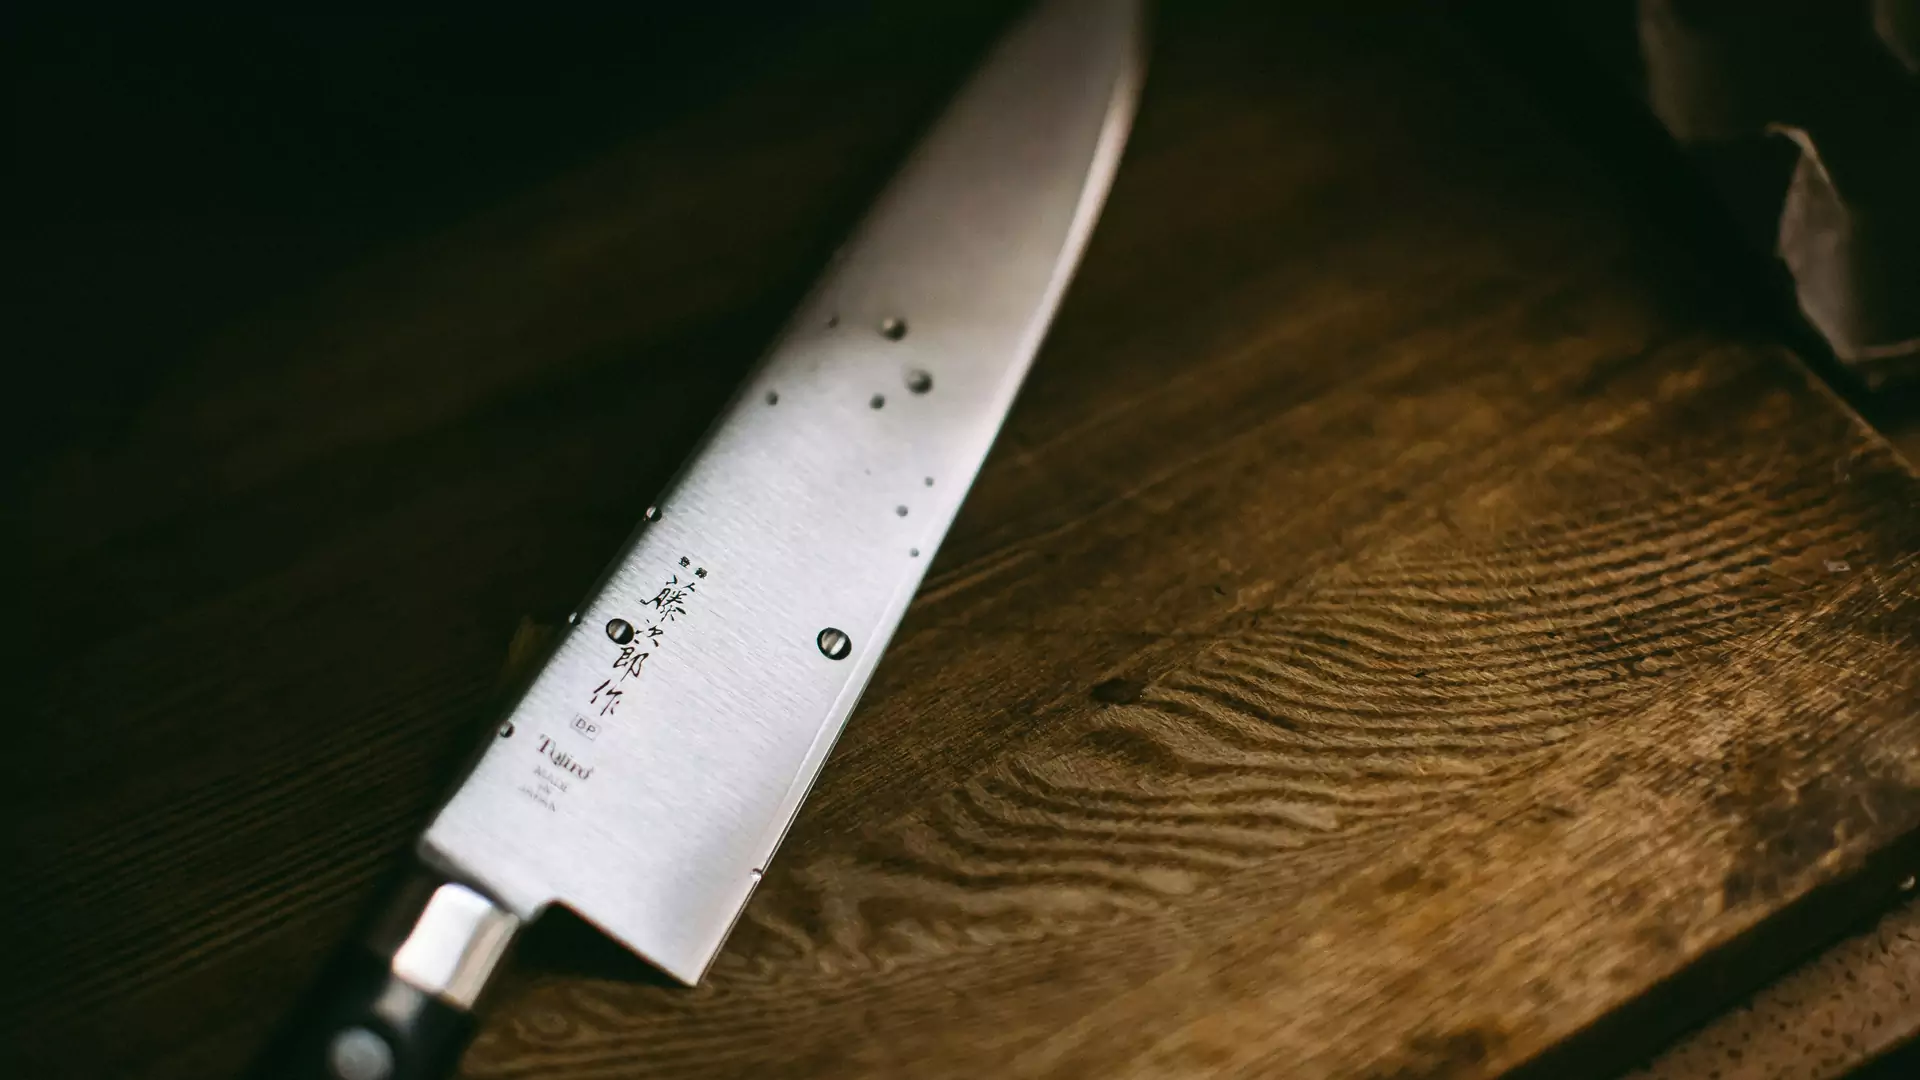 Nóż santoku ze stali damasceńskiej ma 67 warstw i jest niezniszczalny. Pioruńsko ostry, nic do niego nie przywiera